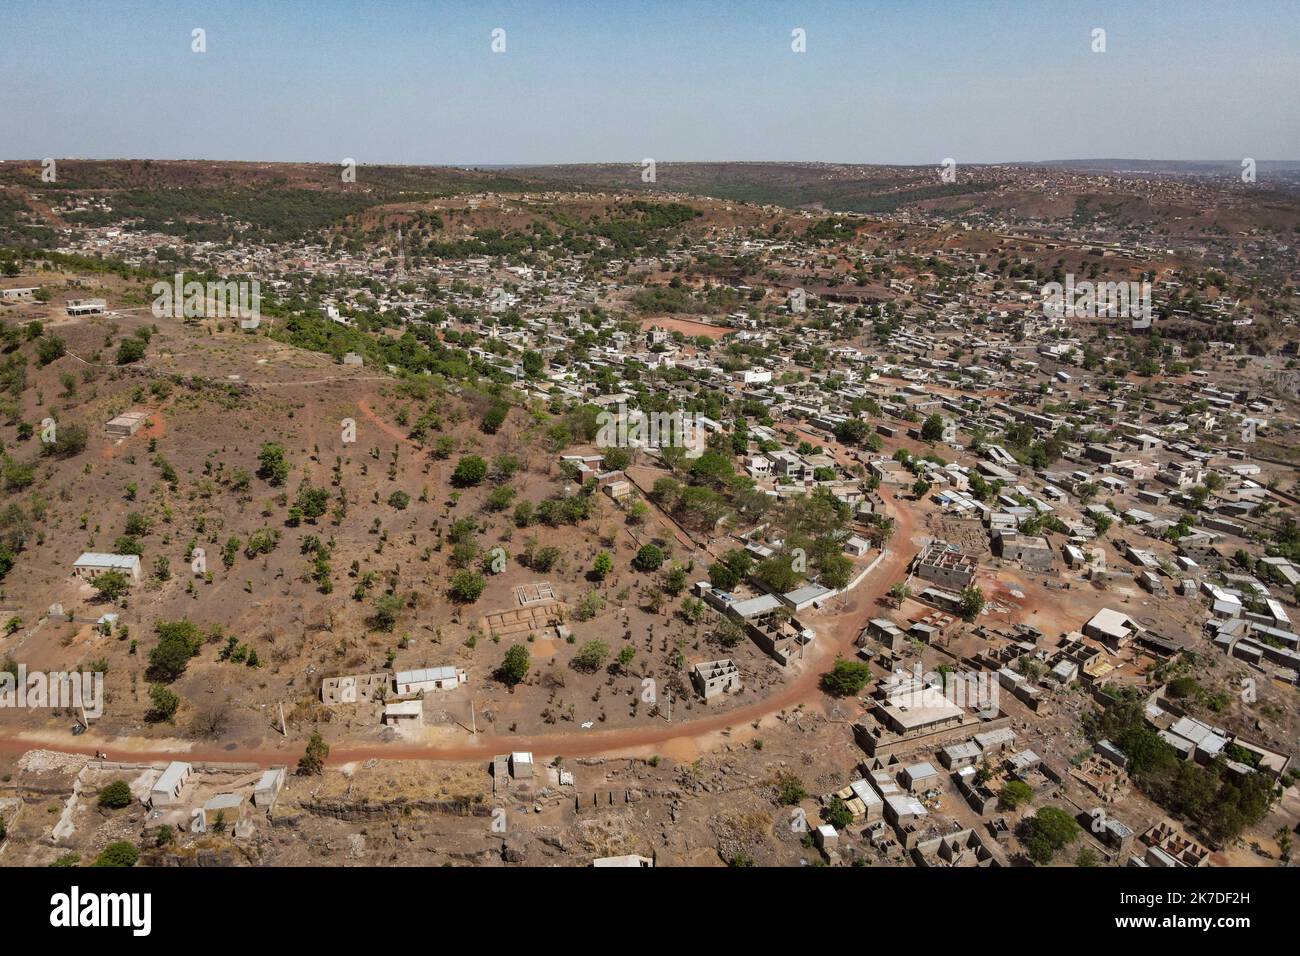 ©Nicolas Remene / Le Pictorium/MAXPPP - Nicolas Remene / Le Pictorium - 11/5/2021 - Mali / District de Bamako / Bamako - Vue eyrienne de Bamako depuis la colline de Lassa. La capitale malienne possede la plus grande croissance urbaine de tout le continent, un veritable defi d'urbanisme concernant les Plans d'Extension de la ville en peine essor.. / 11/5/2021 - Mali / Bamako District / Bamako - Luftaufnahme von Bamako vom Lassa Hill. Die malische Hauptstadt hat das größte städtische Wachstum auf dem Kontinent, eine echte städtebauliche Herausforderung für die Expansionspläne der Stadt. Stockfoto